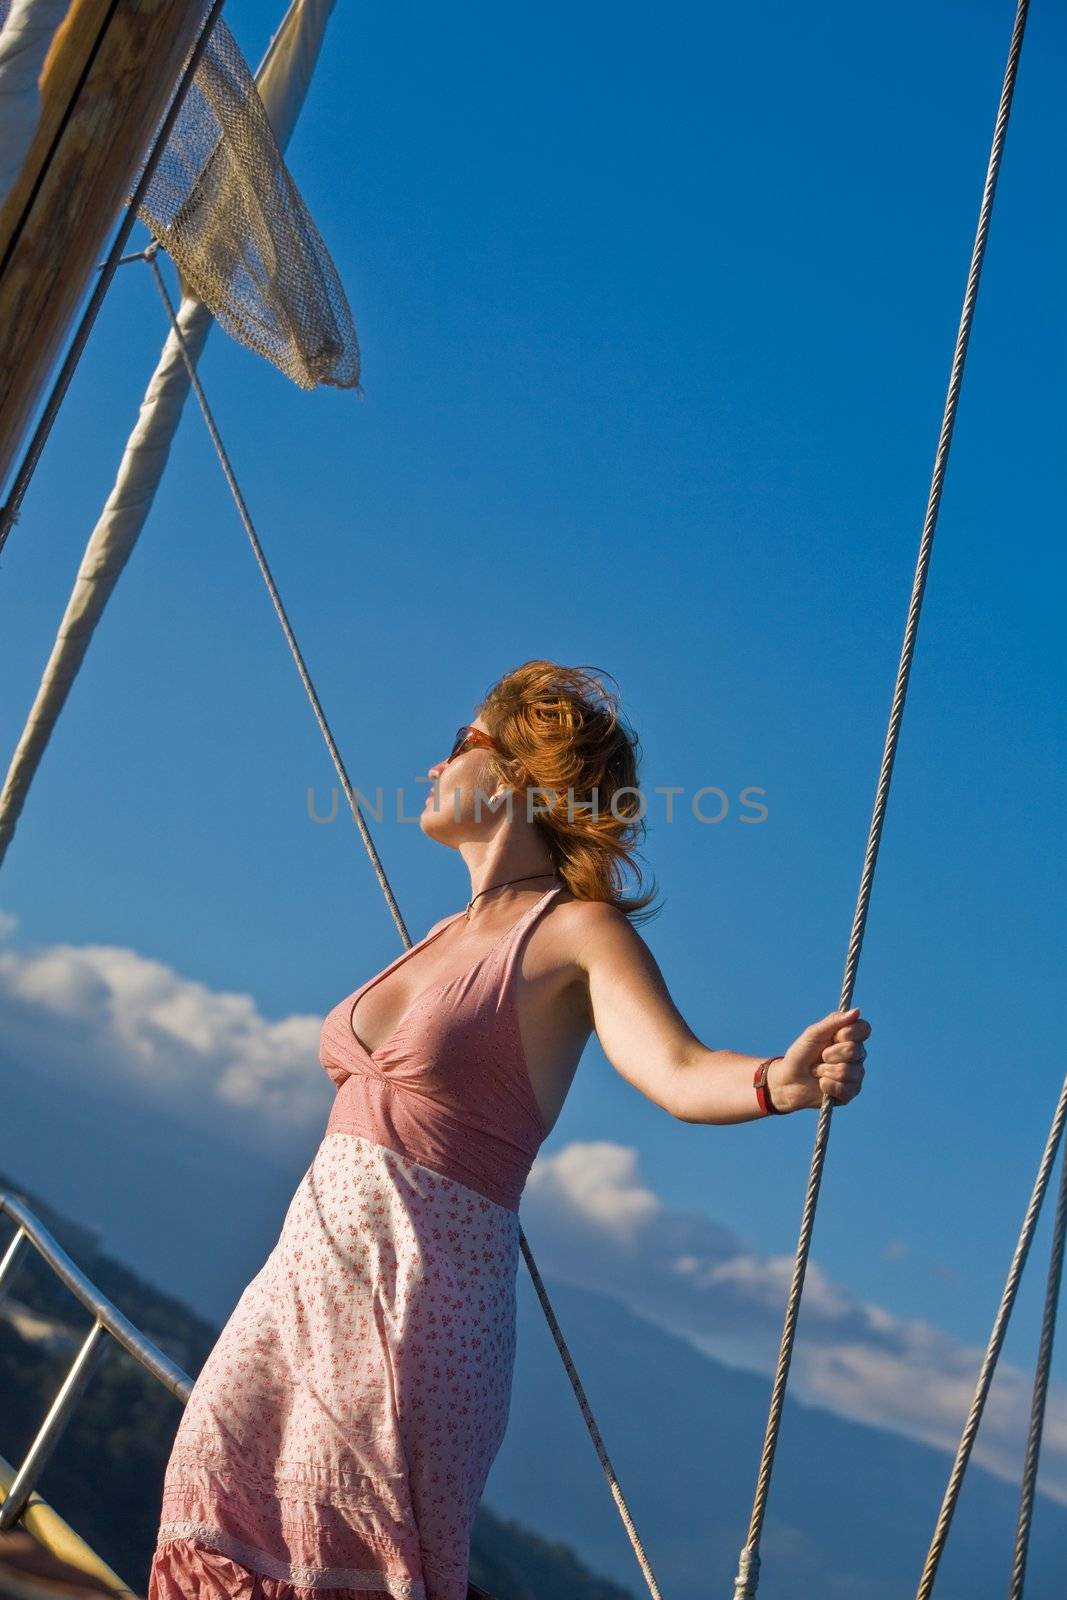 leisure series: yacht journey in the summer sealine